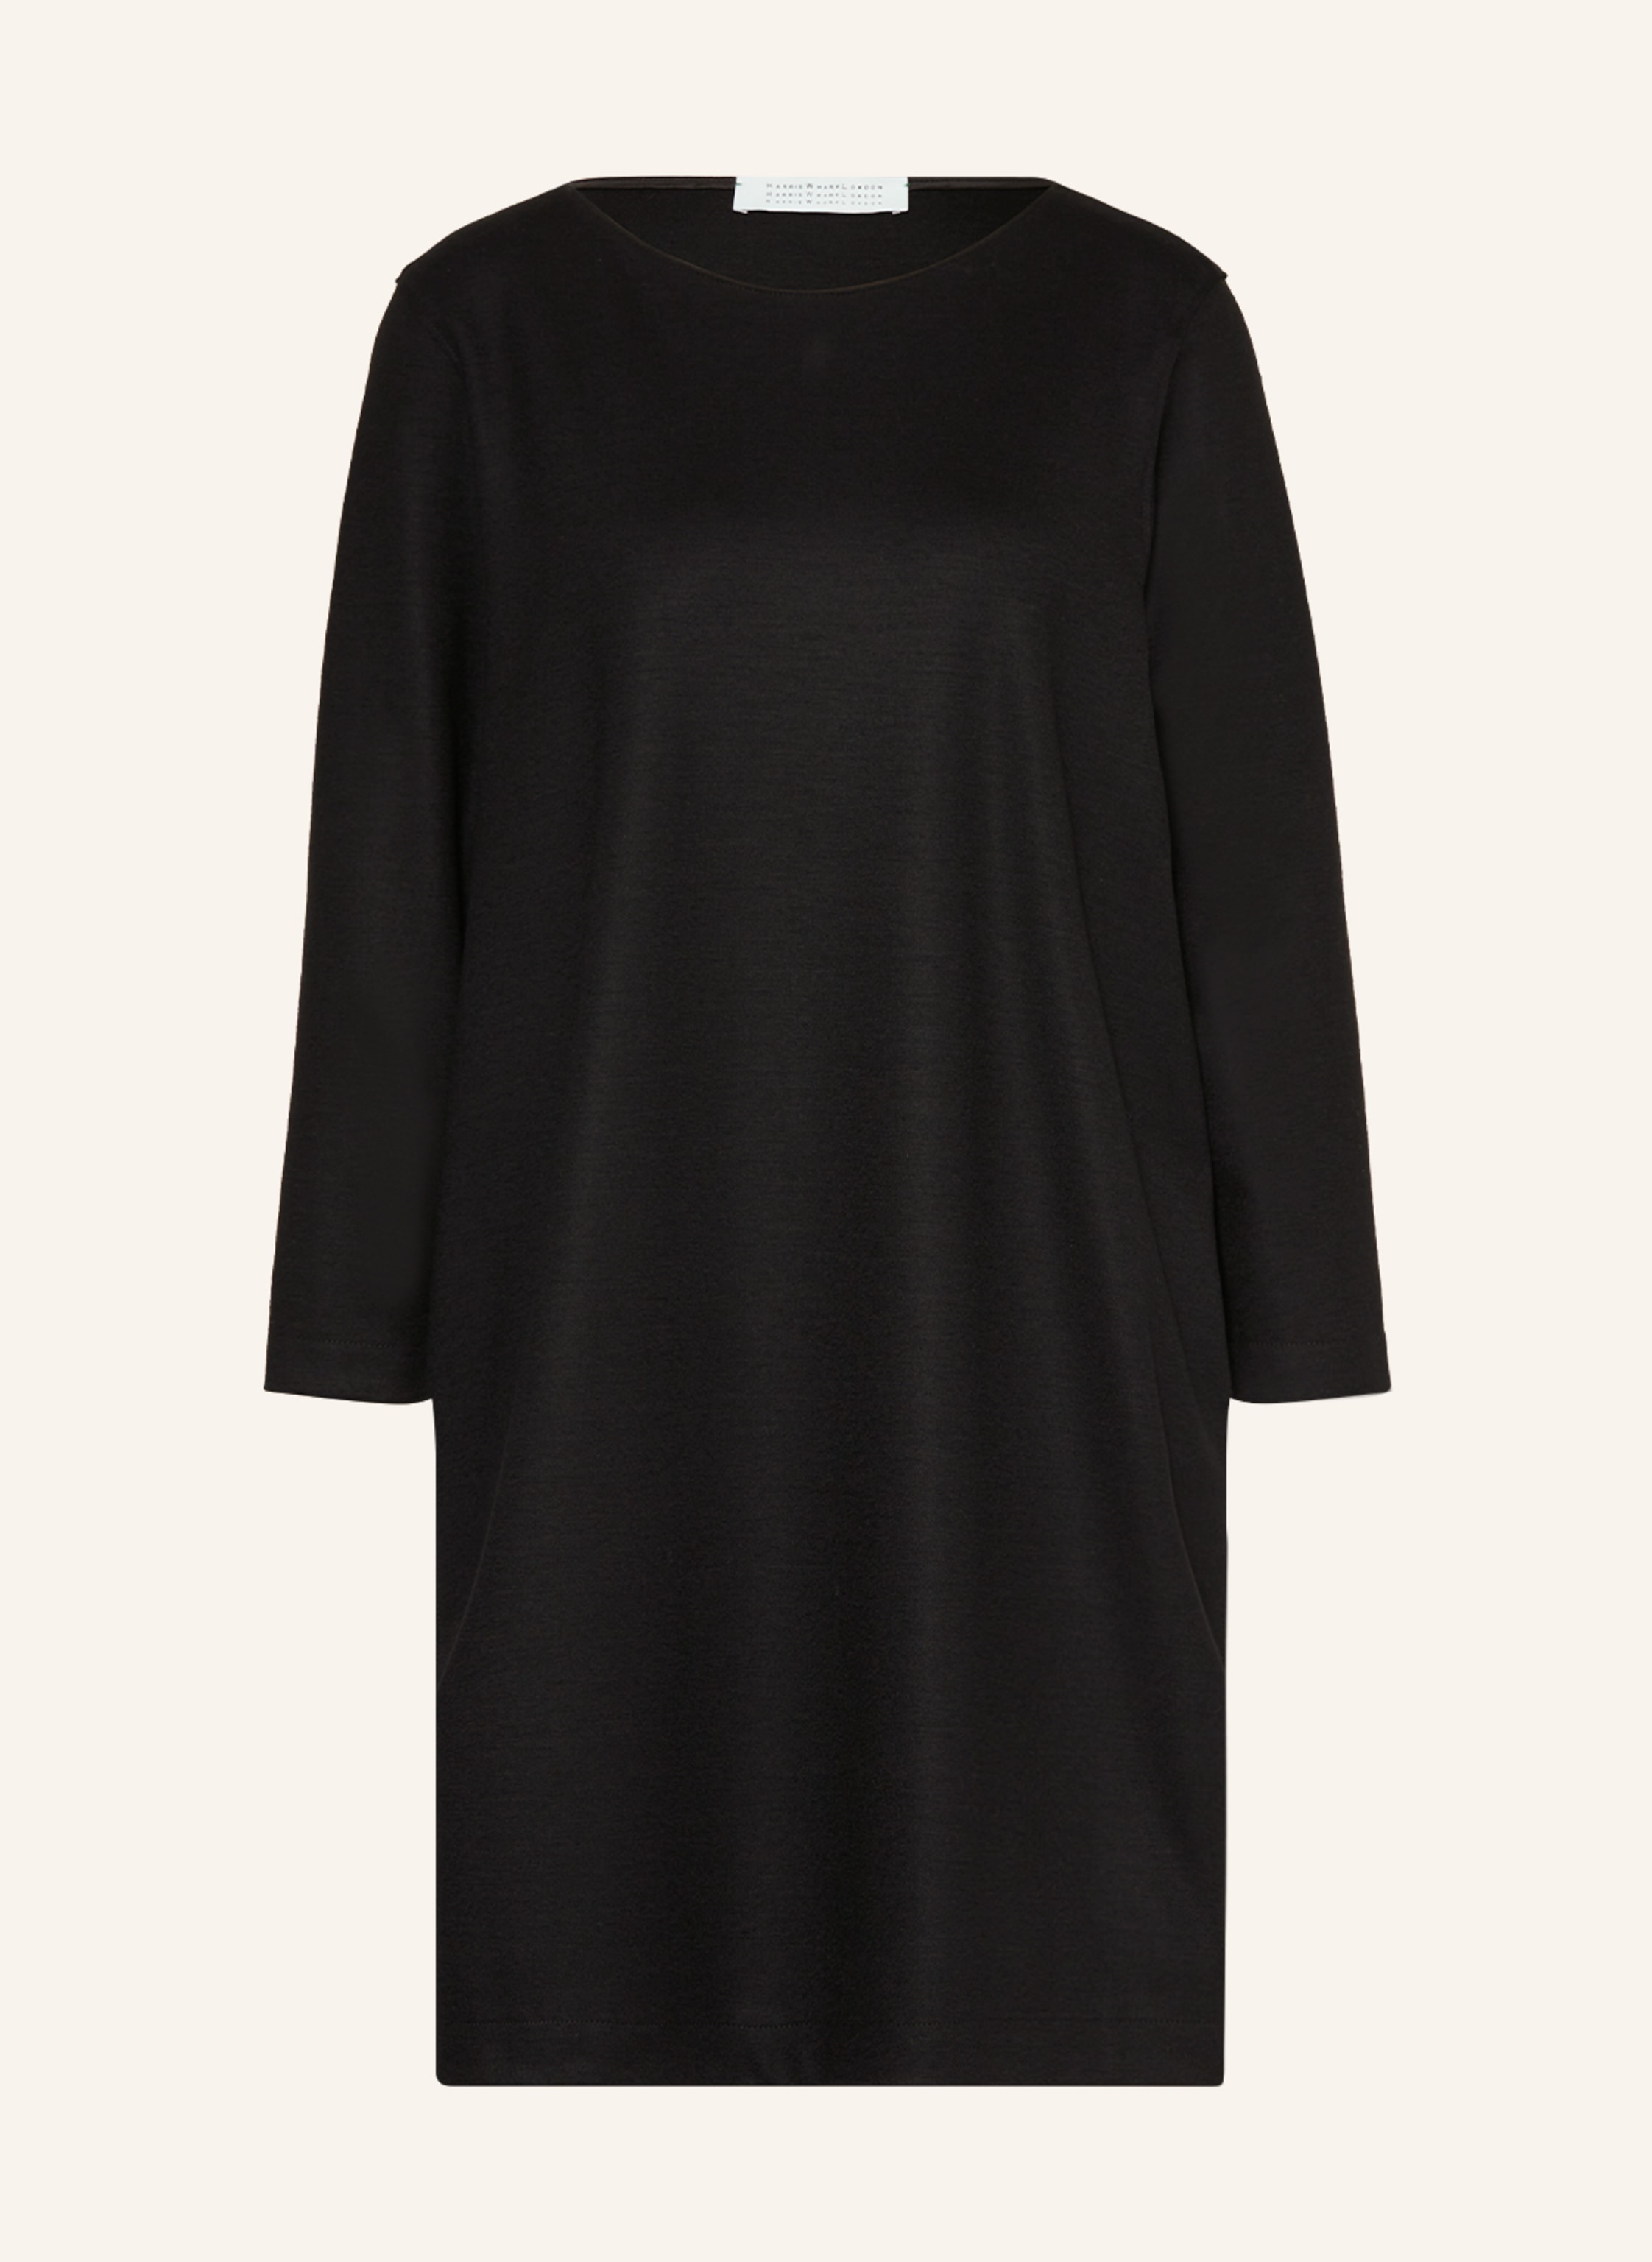 HARRIS WHARF LONDON Kleid mit 3/4-Arm in schwarz